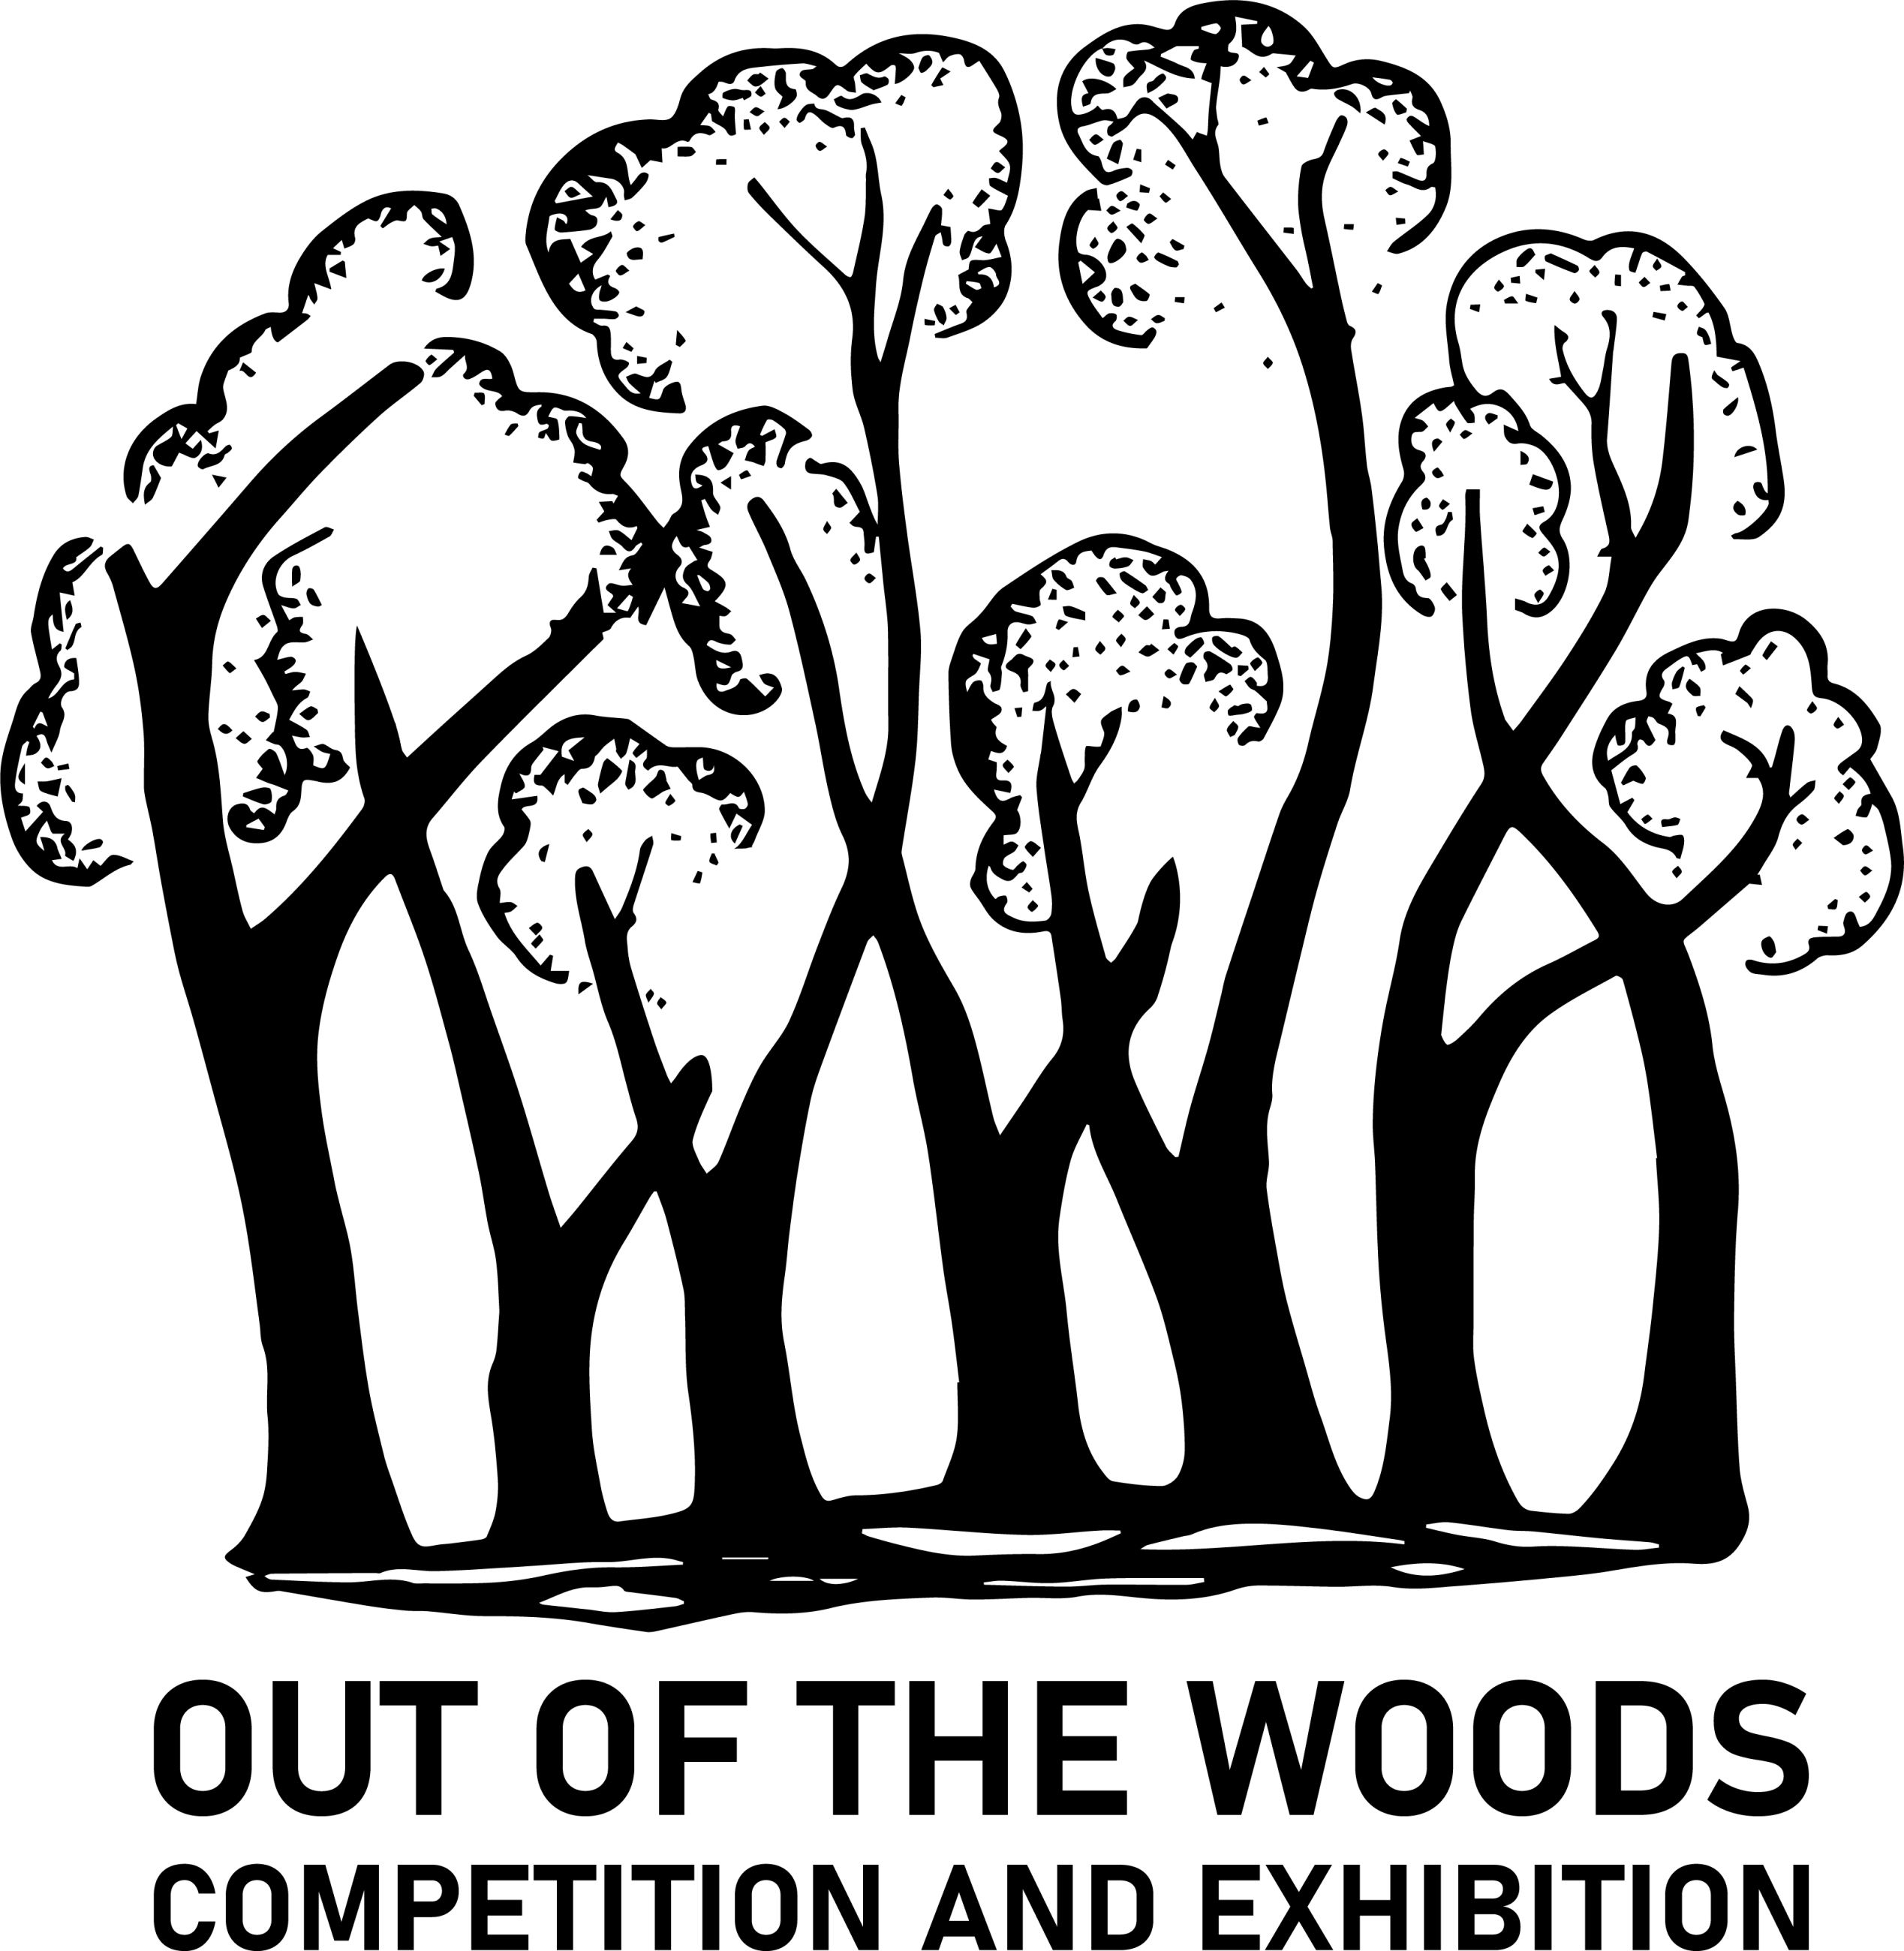 OOTW Logo PNG file